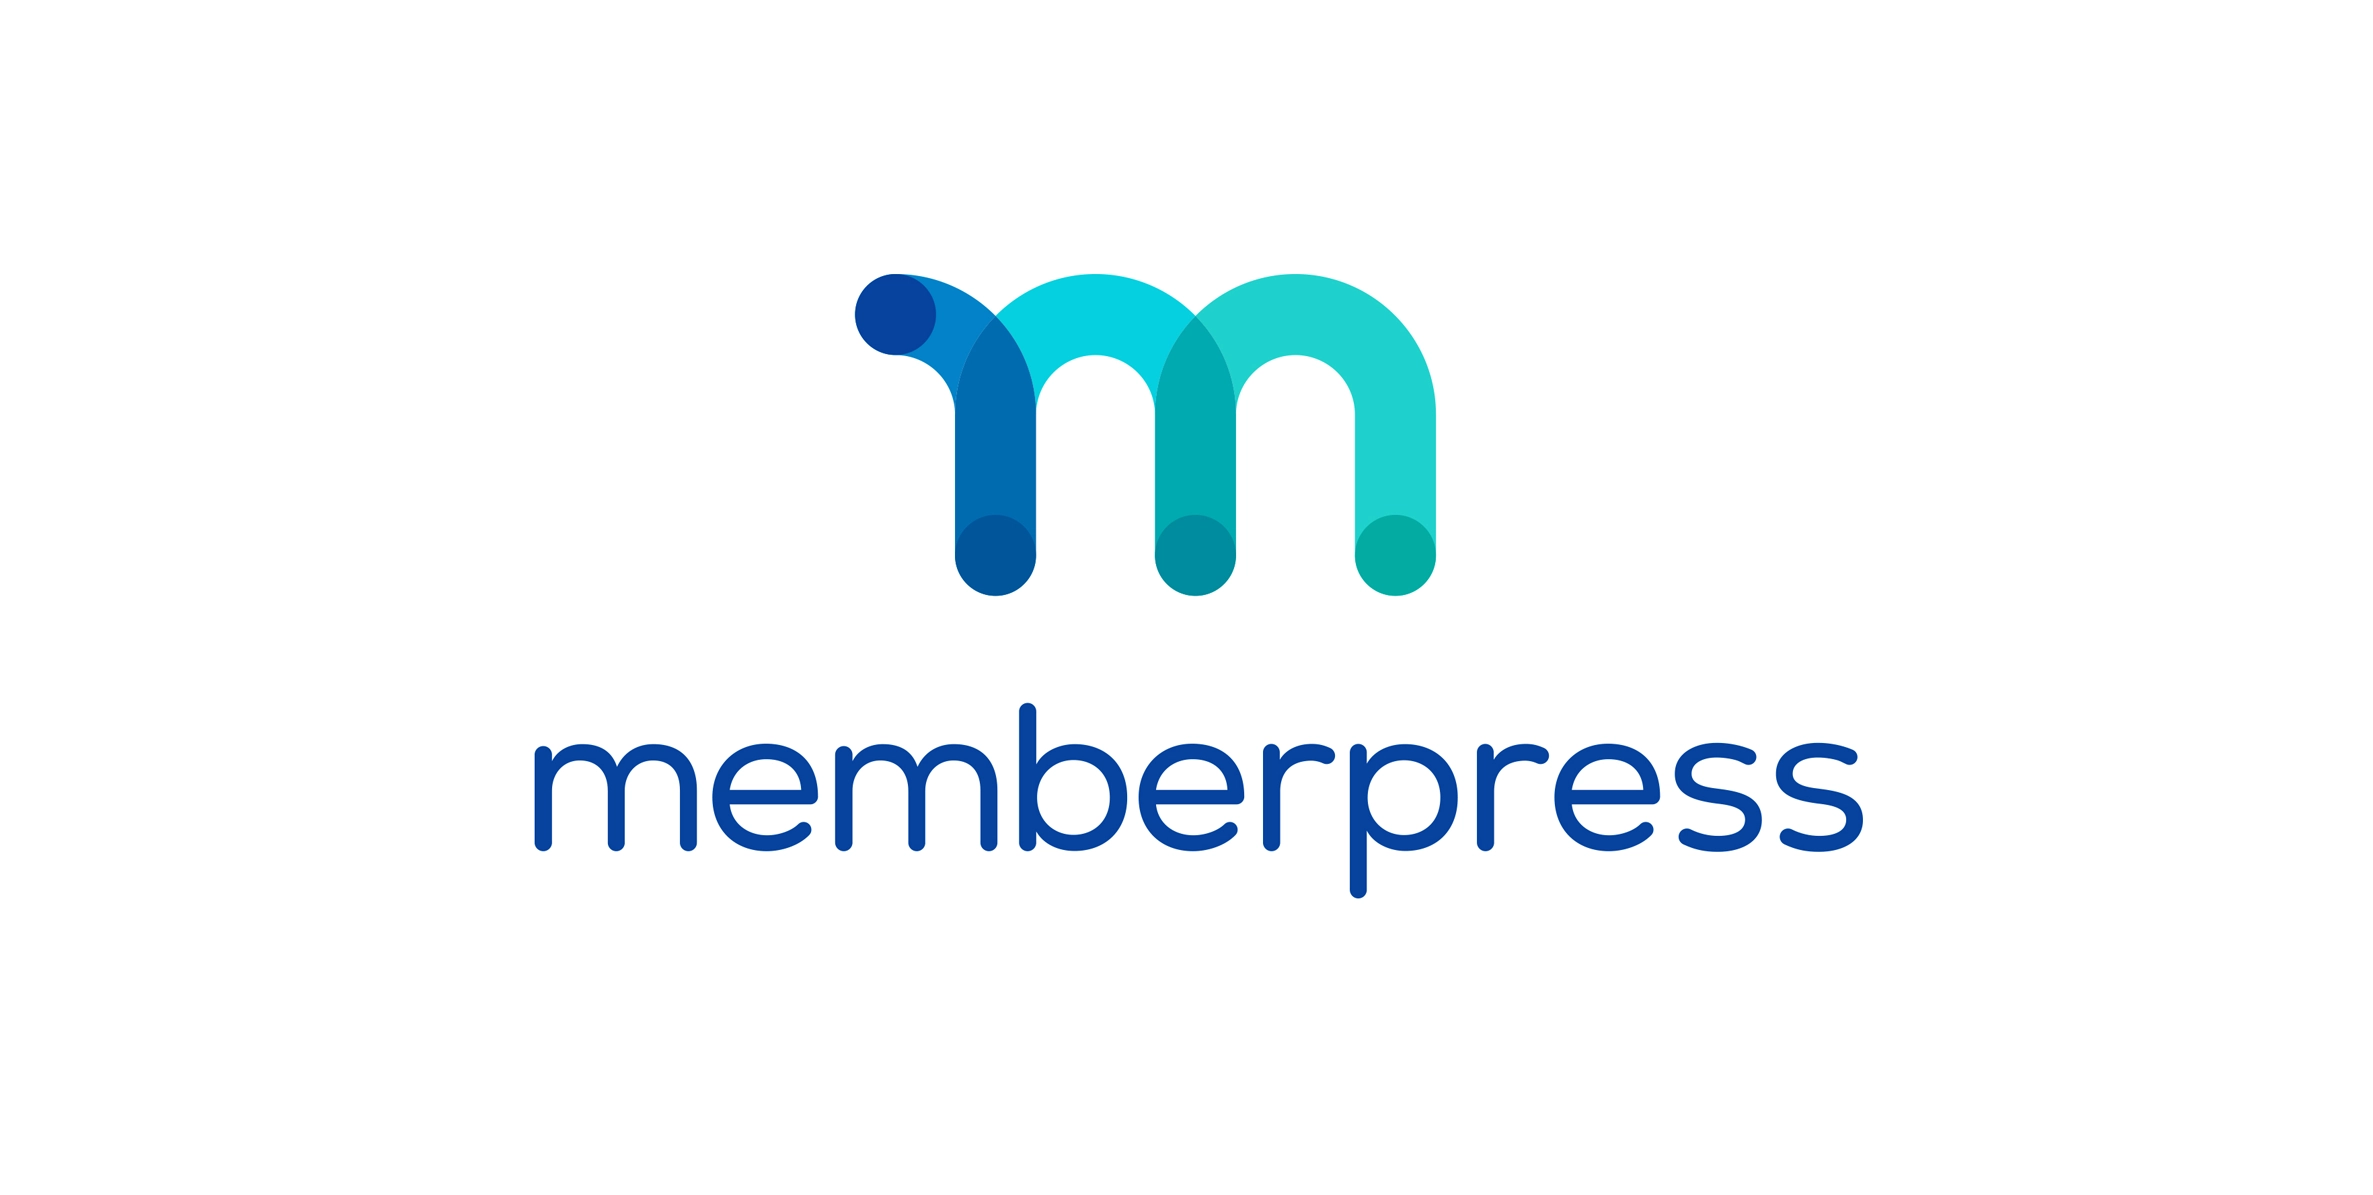 MemberPress: build a unique membership platform